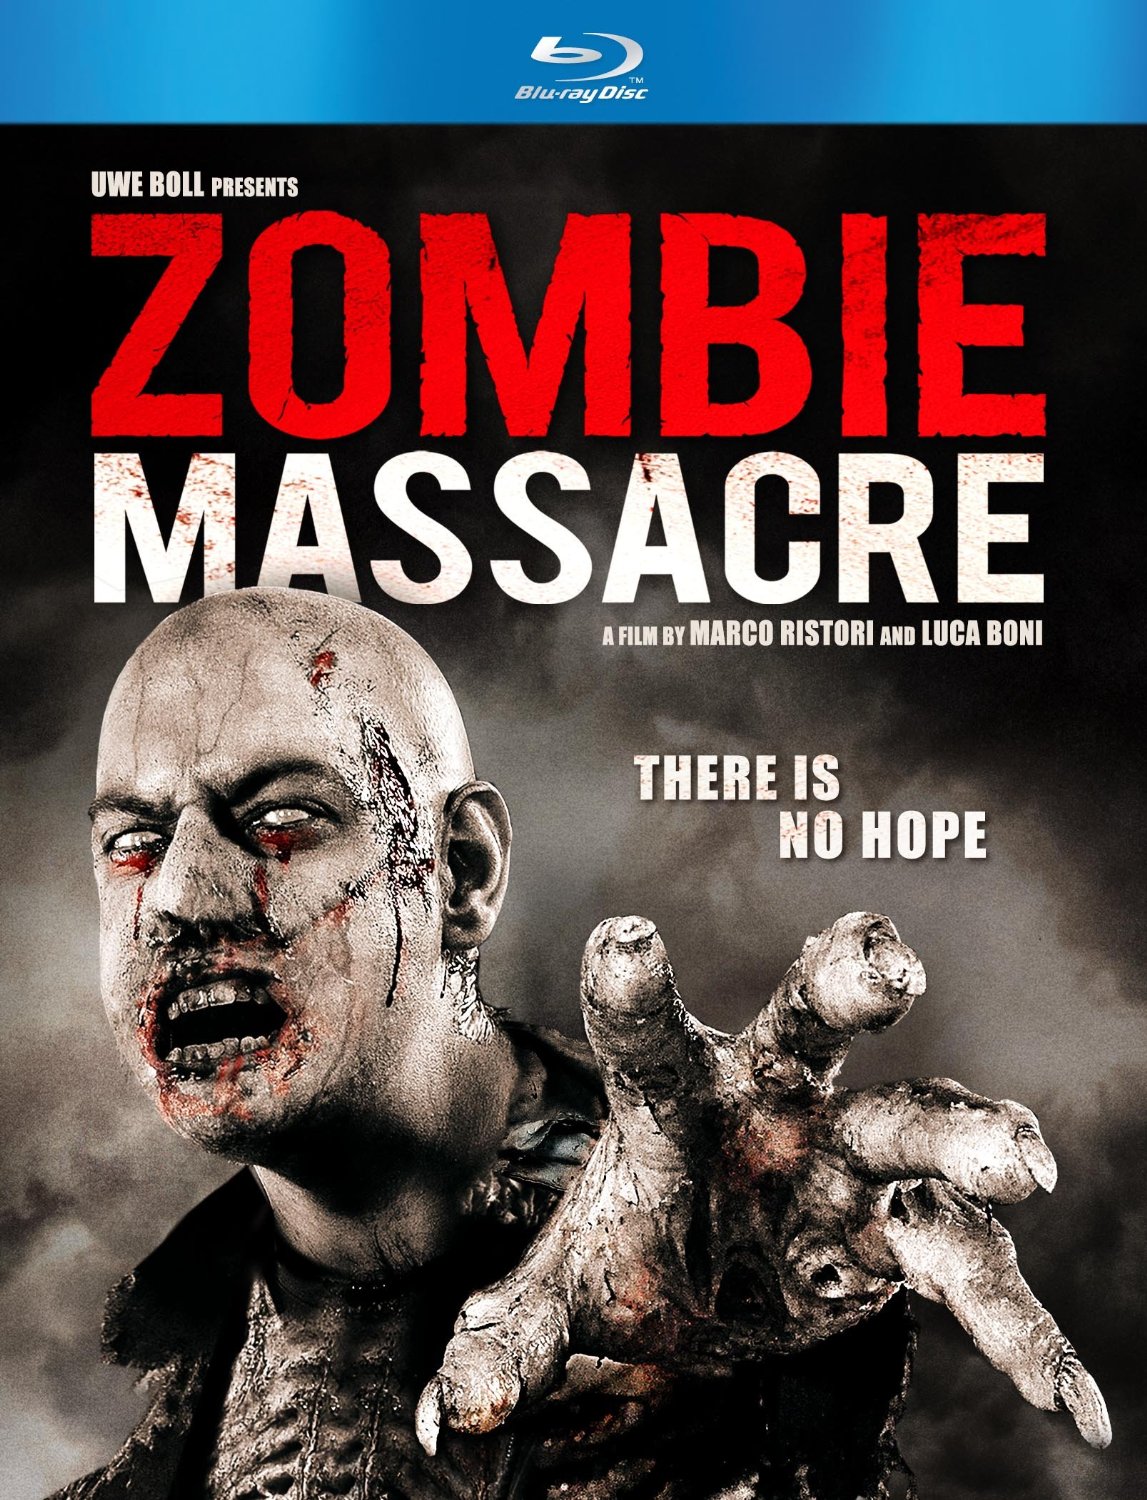 Zombie Massacre Backgrounds, Compatible - PC, Mobile, Gadgets| 1147x1500 px